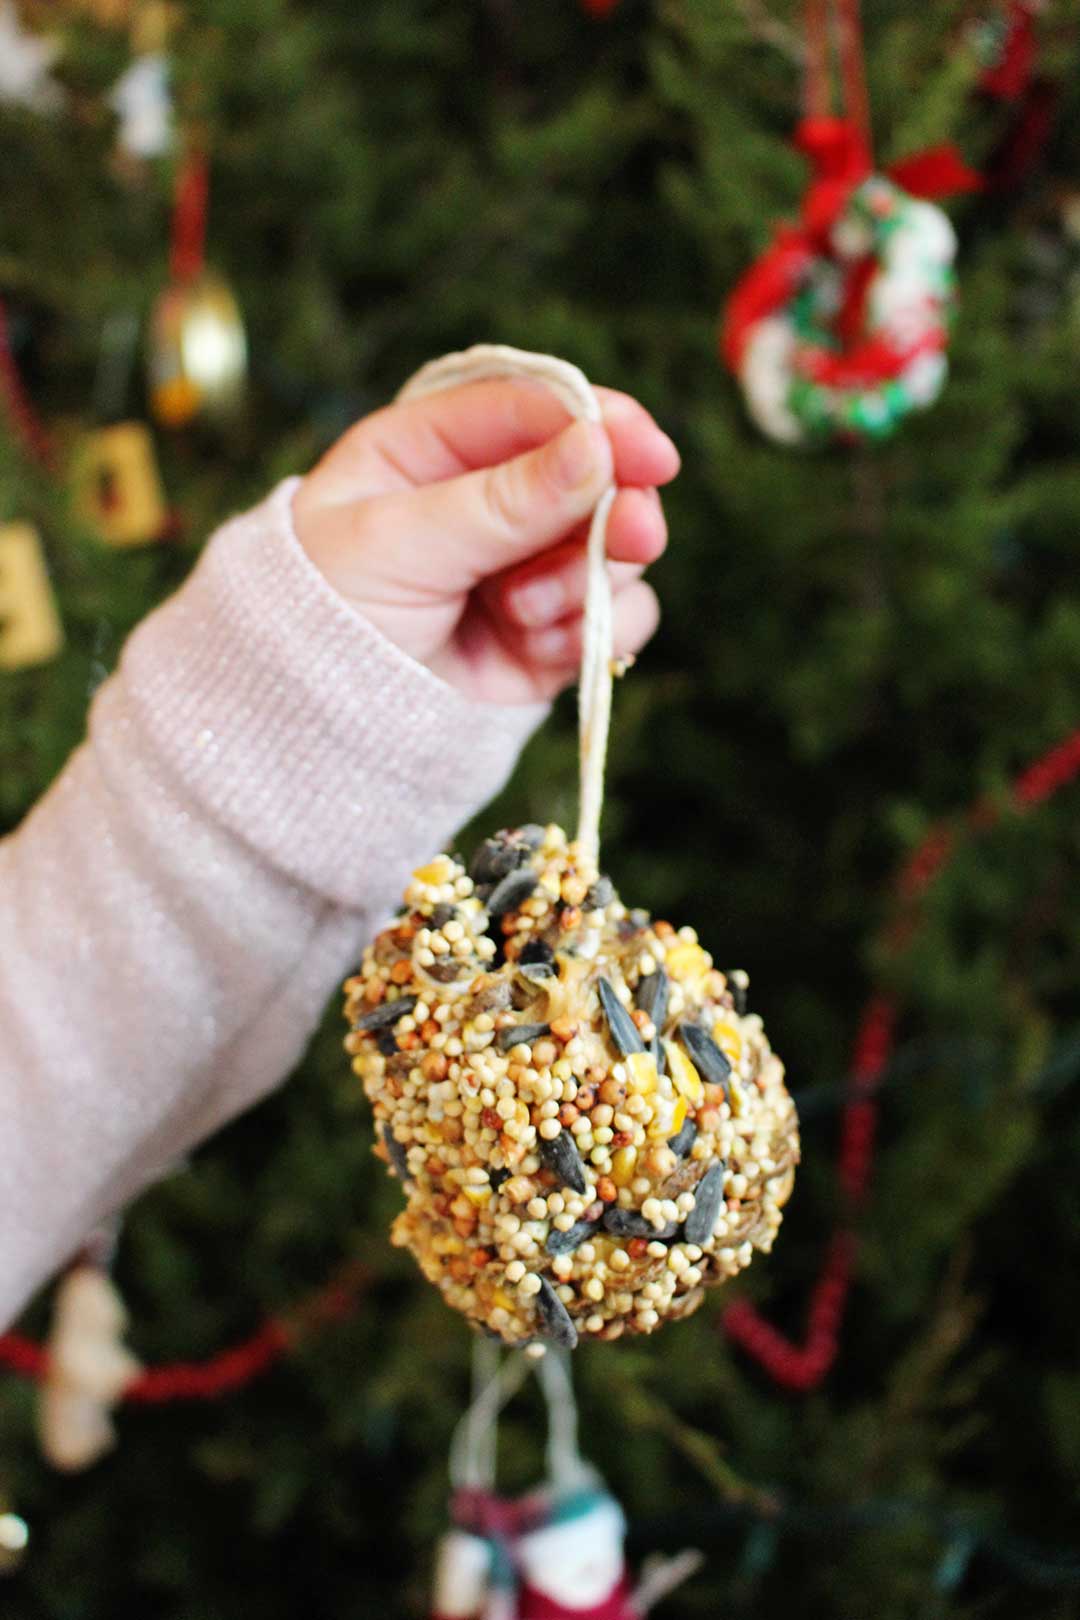 Pine Cone Christmas Tree Craft - Grandma Ideas